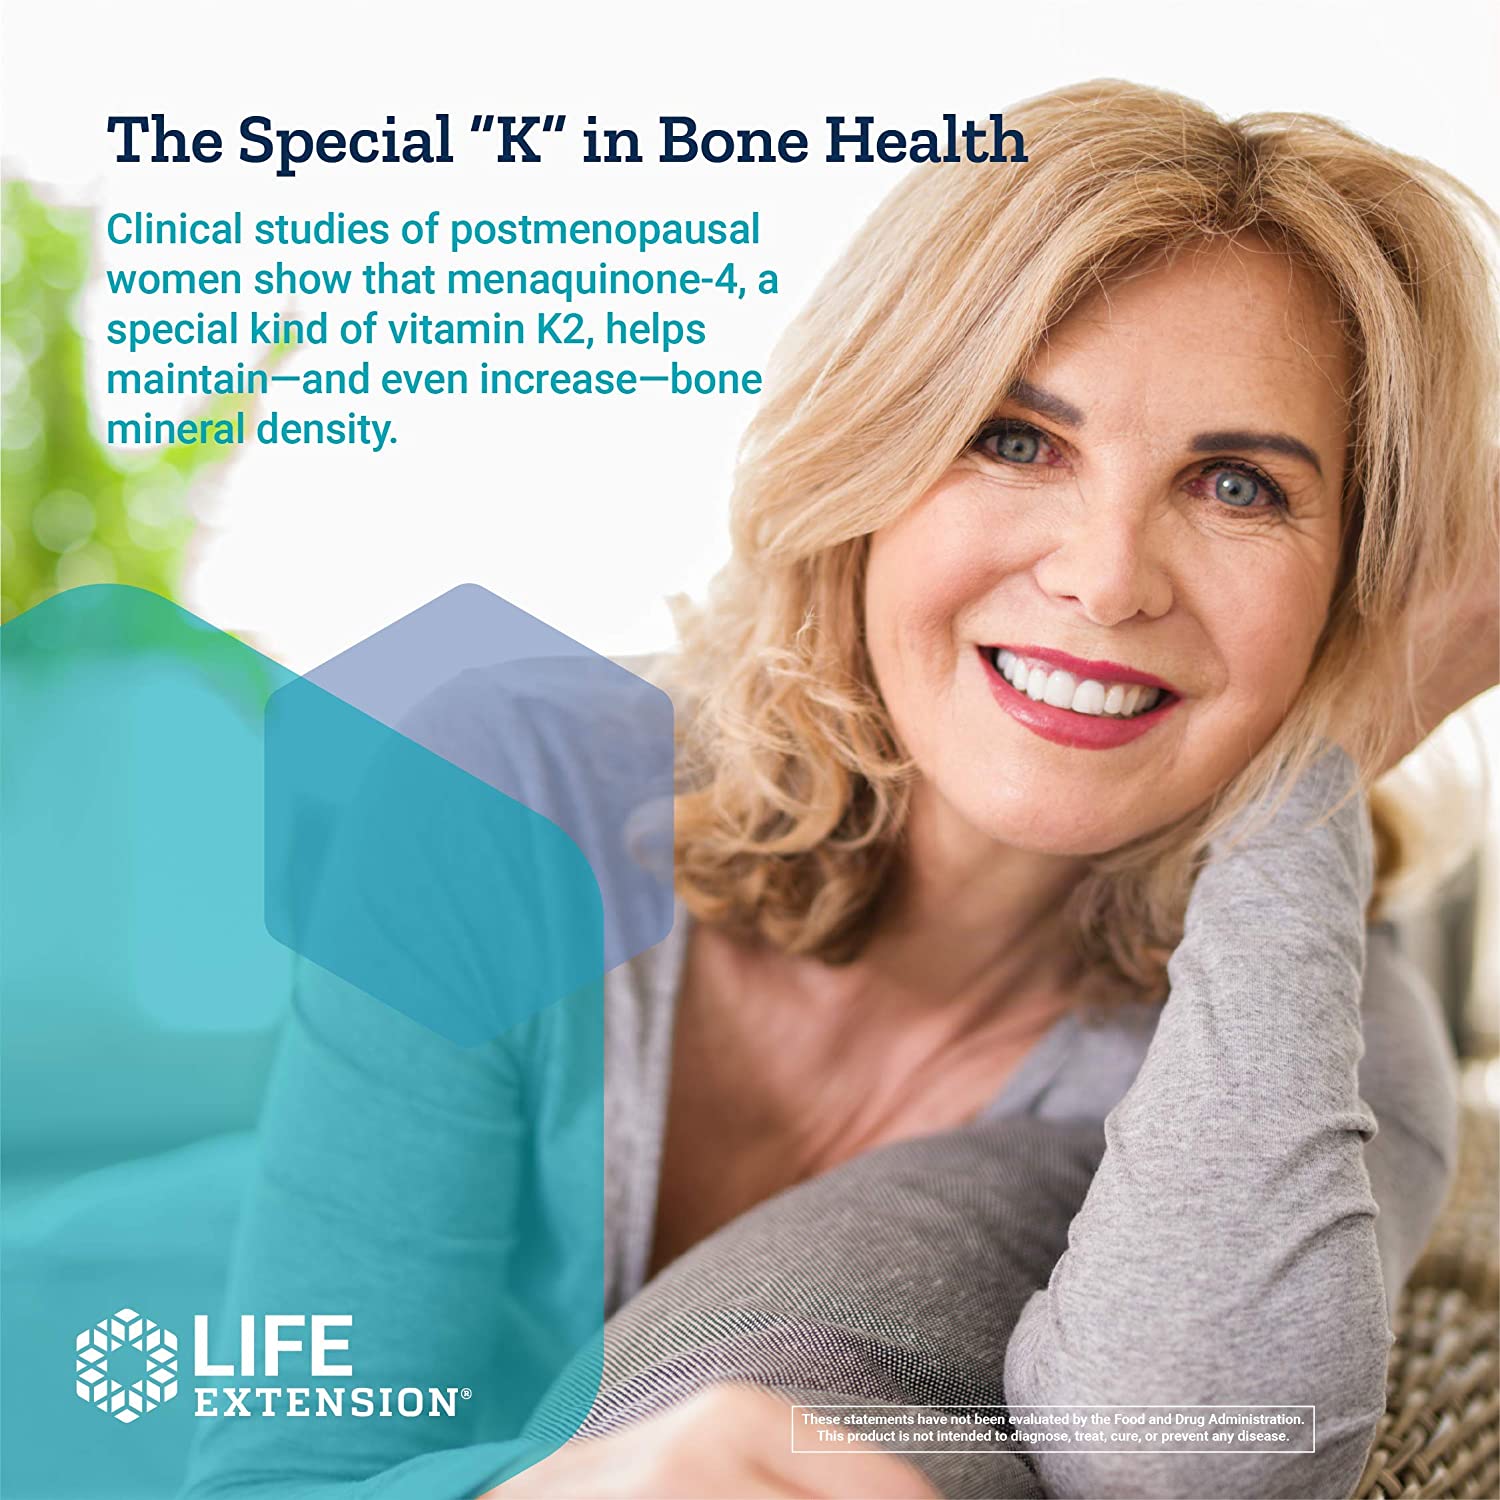 Life Extension Bone Restore Elite